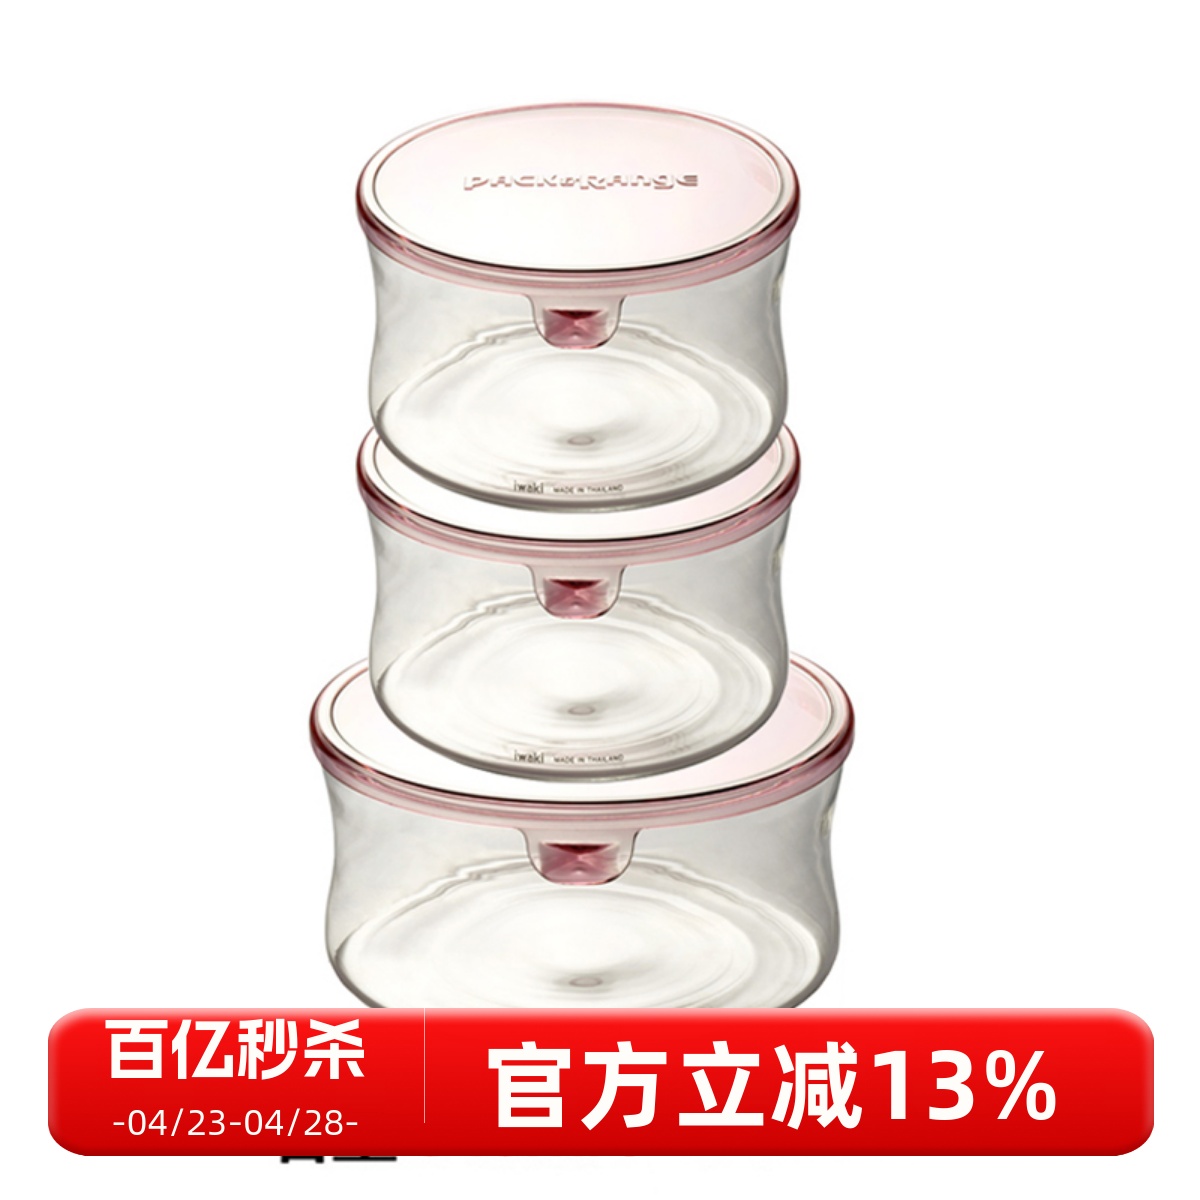 日本iwaki怡万家超轻保鲜盒进口玻璃饭盒便当盒微波碗保鲜碗简装